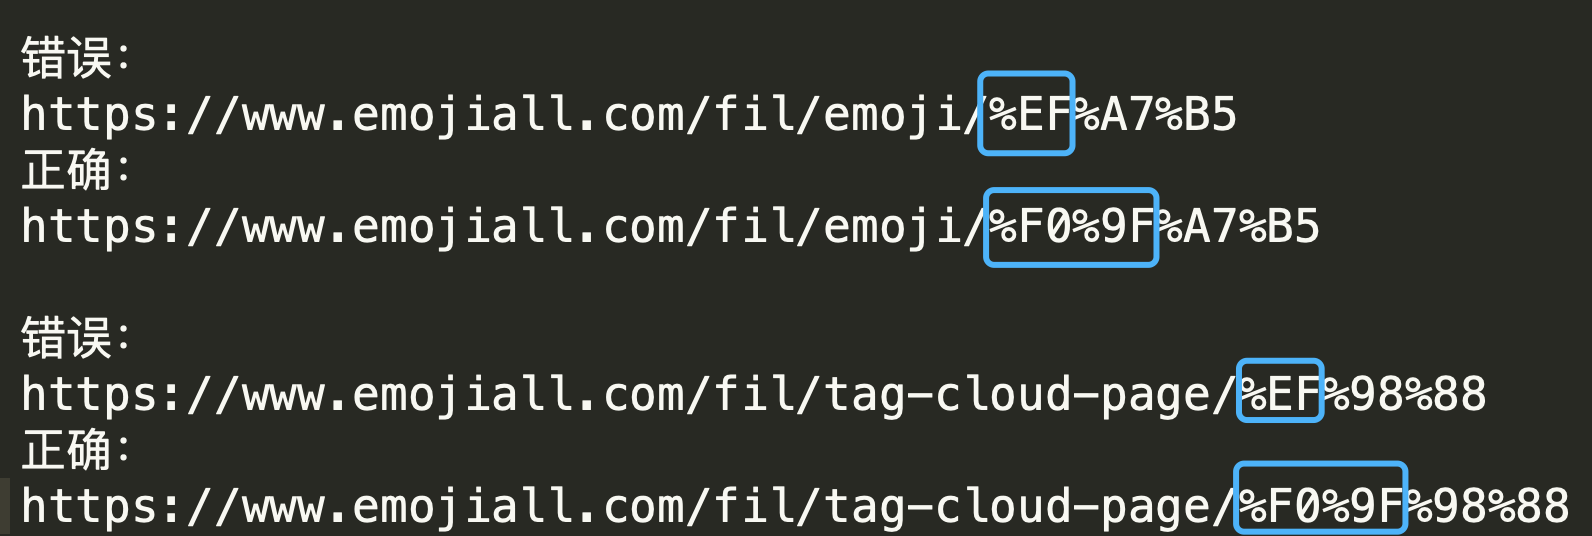 Emoji网址错误规律